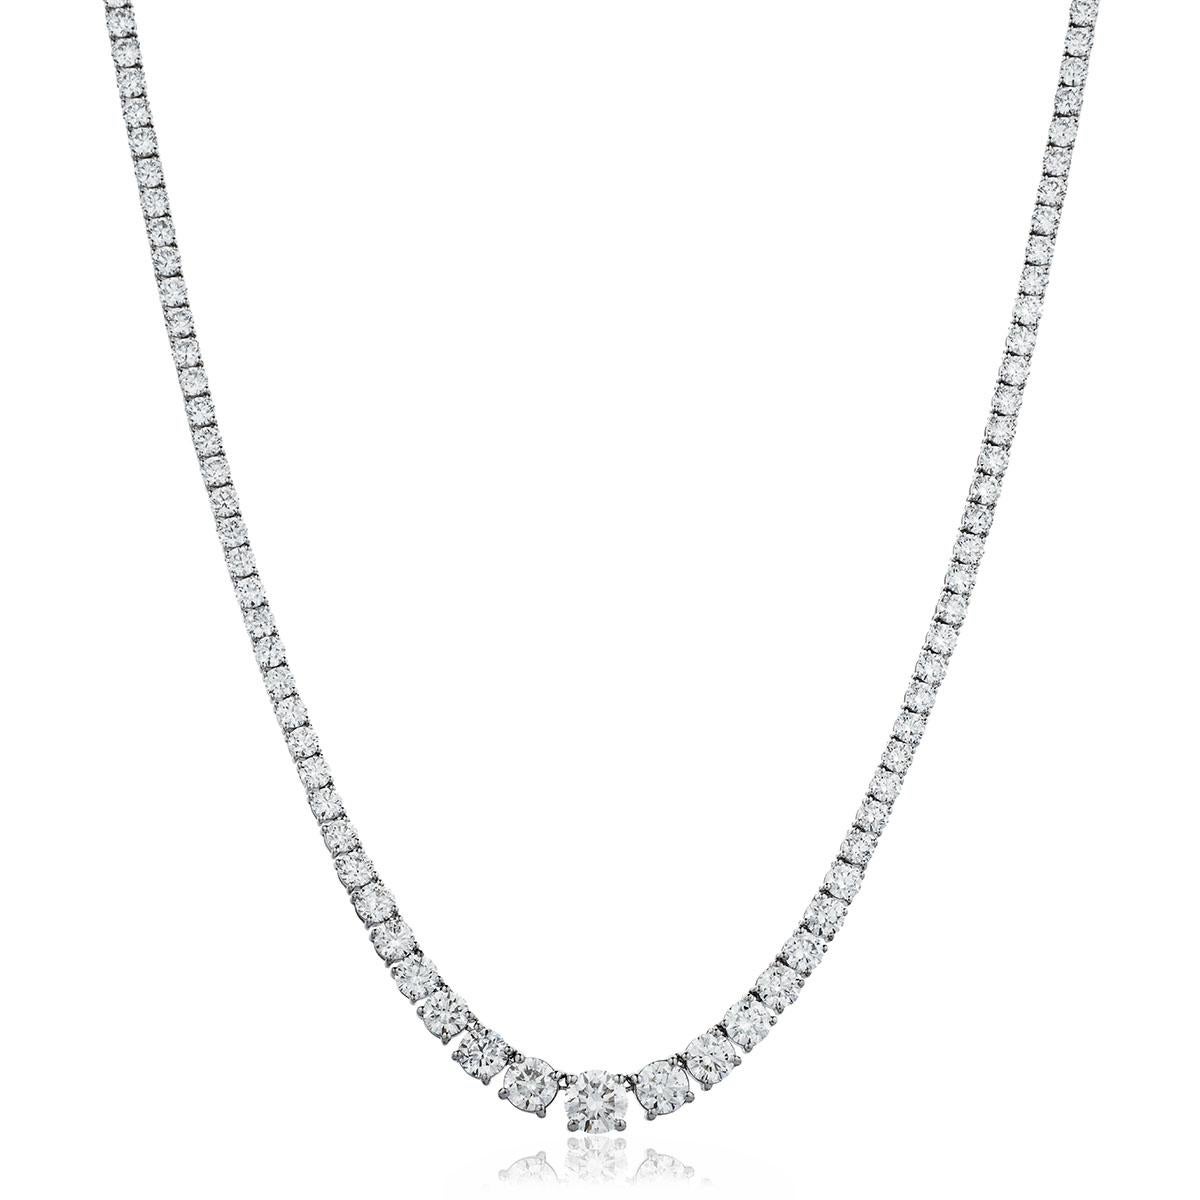 Cet étonnant et méga collier Riviera met en valeur un poids total de 24,52 carats de diamants parfaitement gradués de taille ronde et brillante, de couleur blanche étincelante G et de pureté SI1, dont le plus gros pèse 0,77 carat. Chaque pierre est